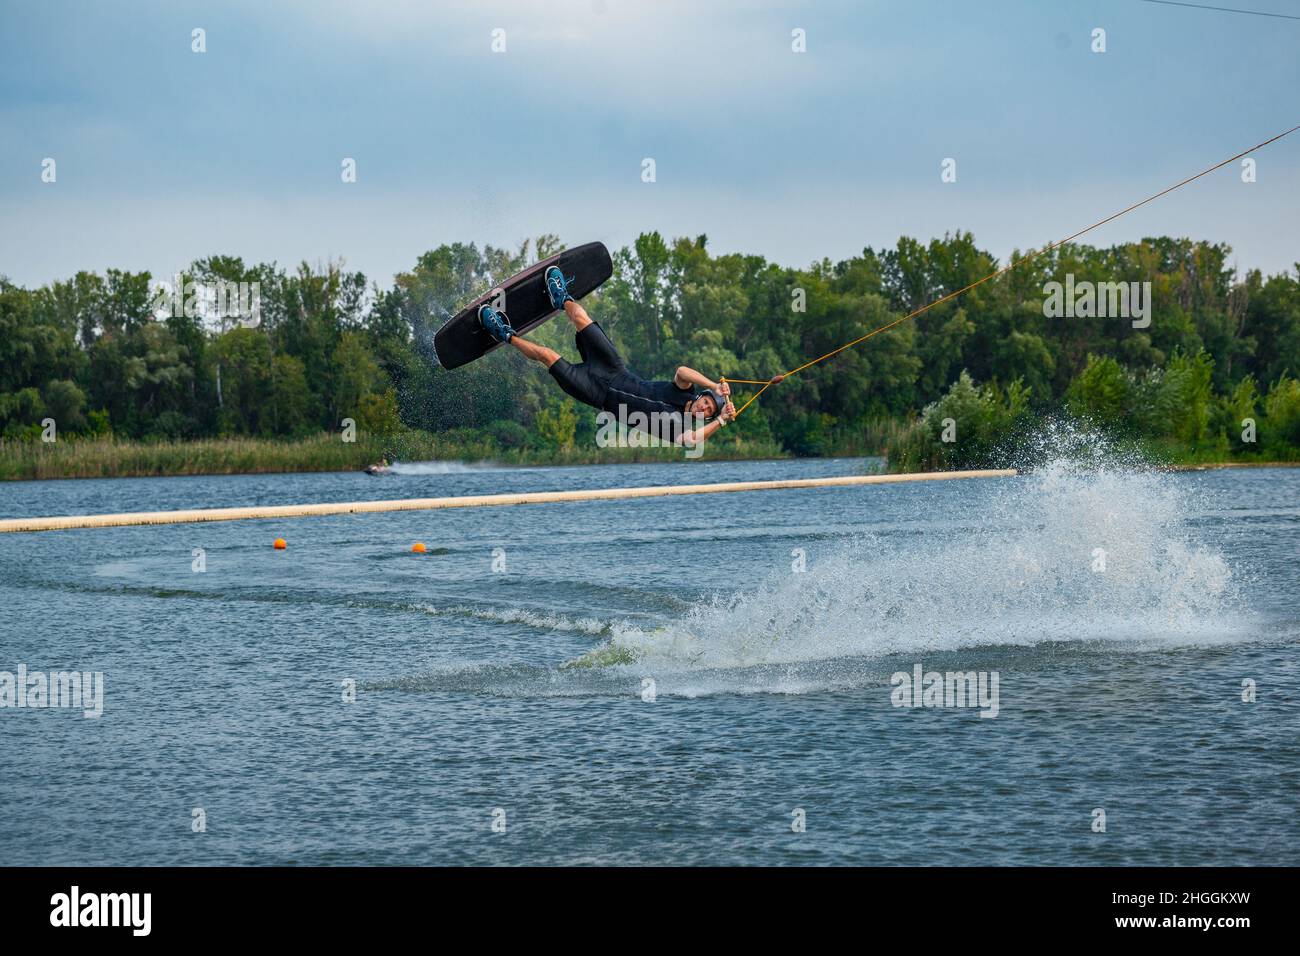 Il pilota esperto del wakeboard salta e gira in aria tenendo il cavo di traino Foto Stock